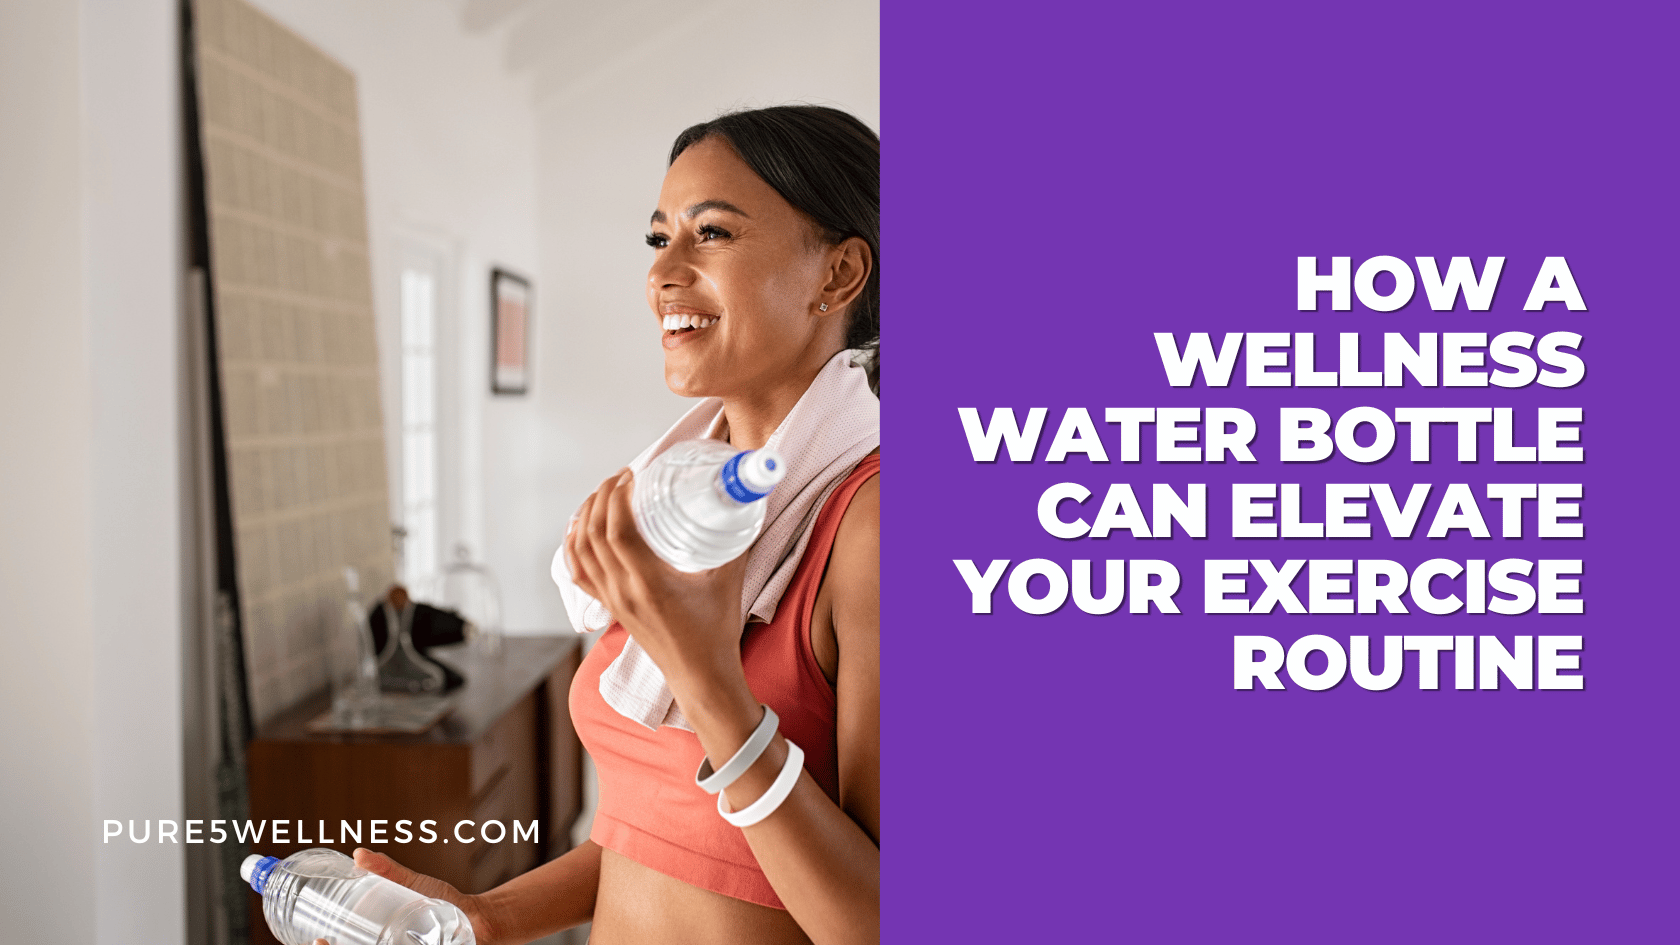 Wellness water bottle